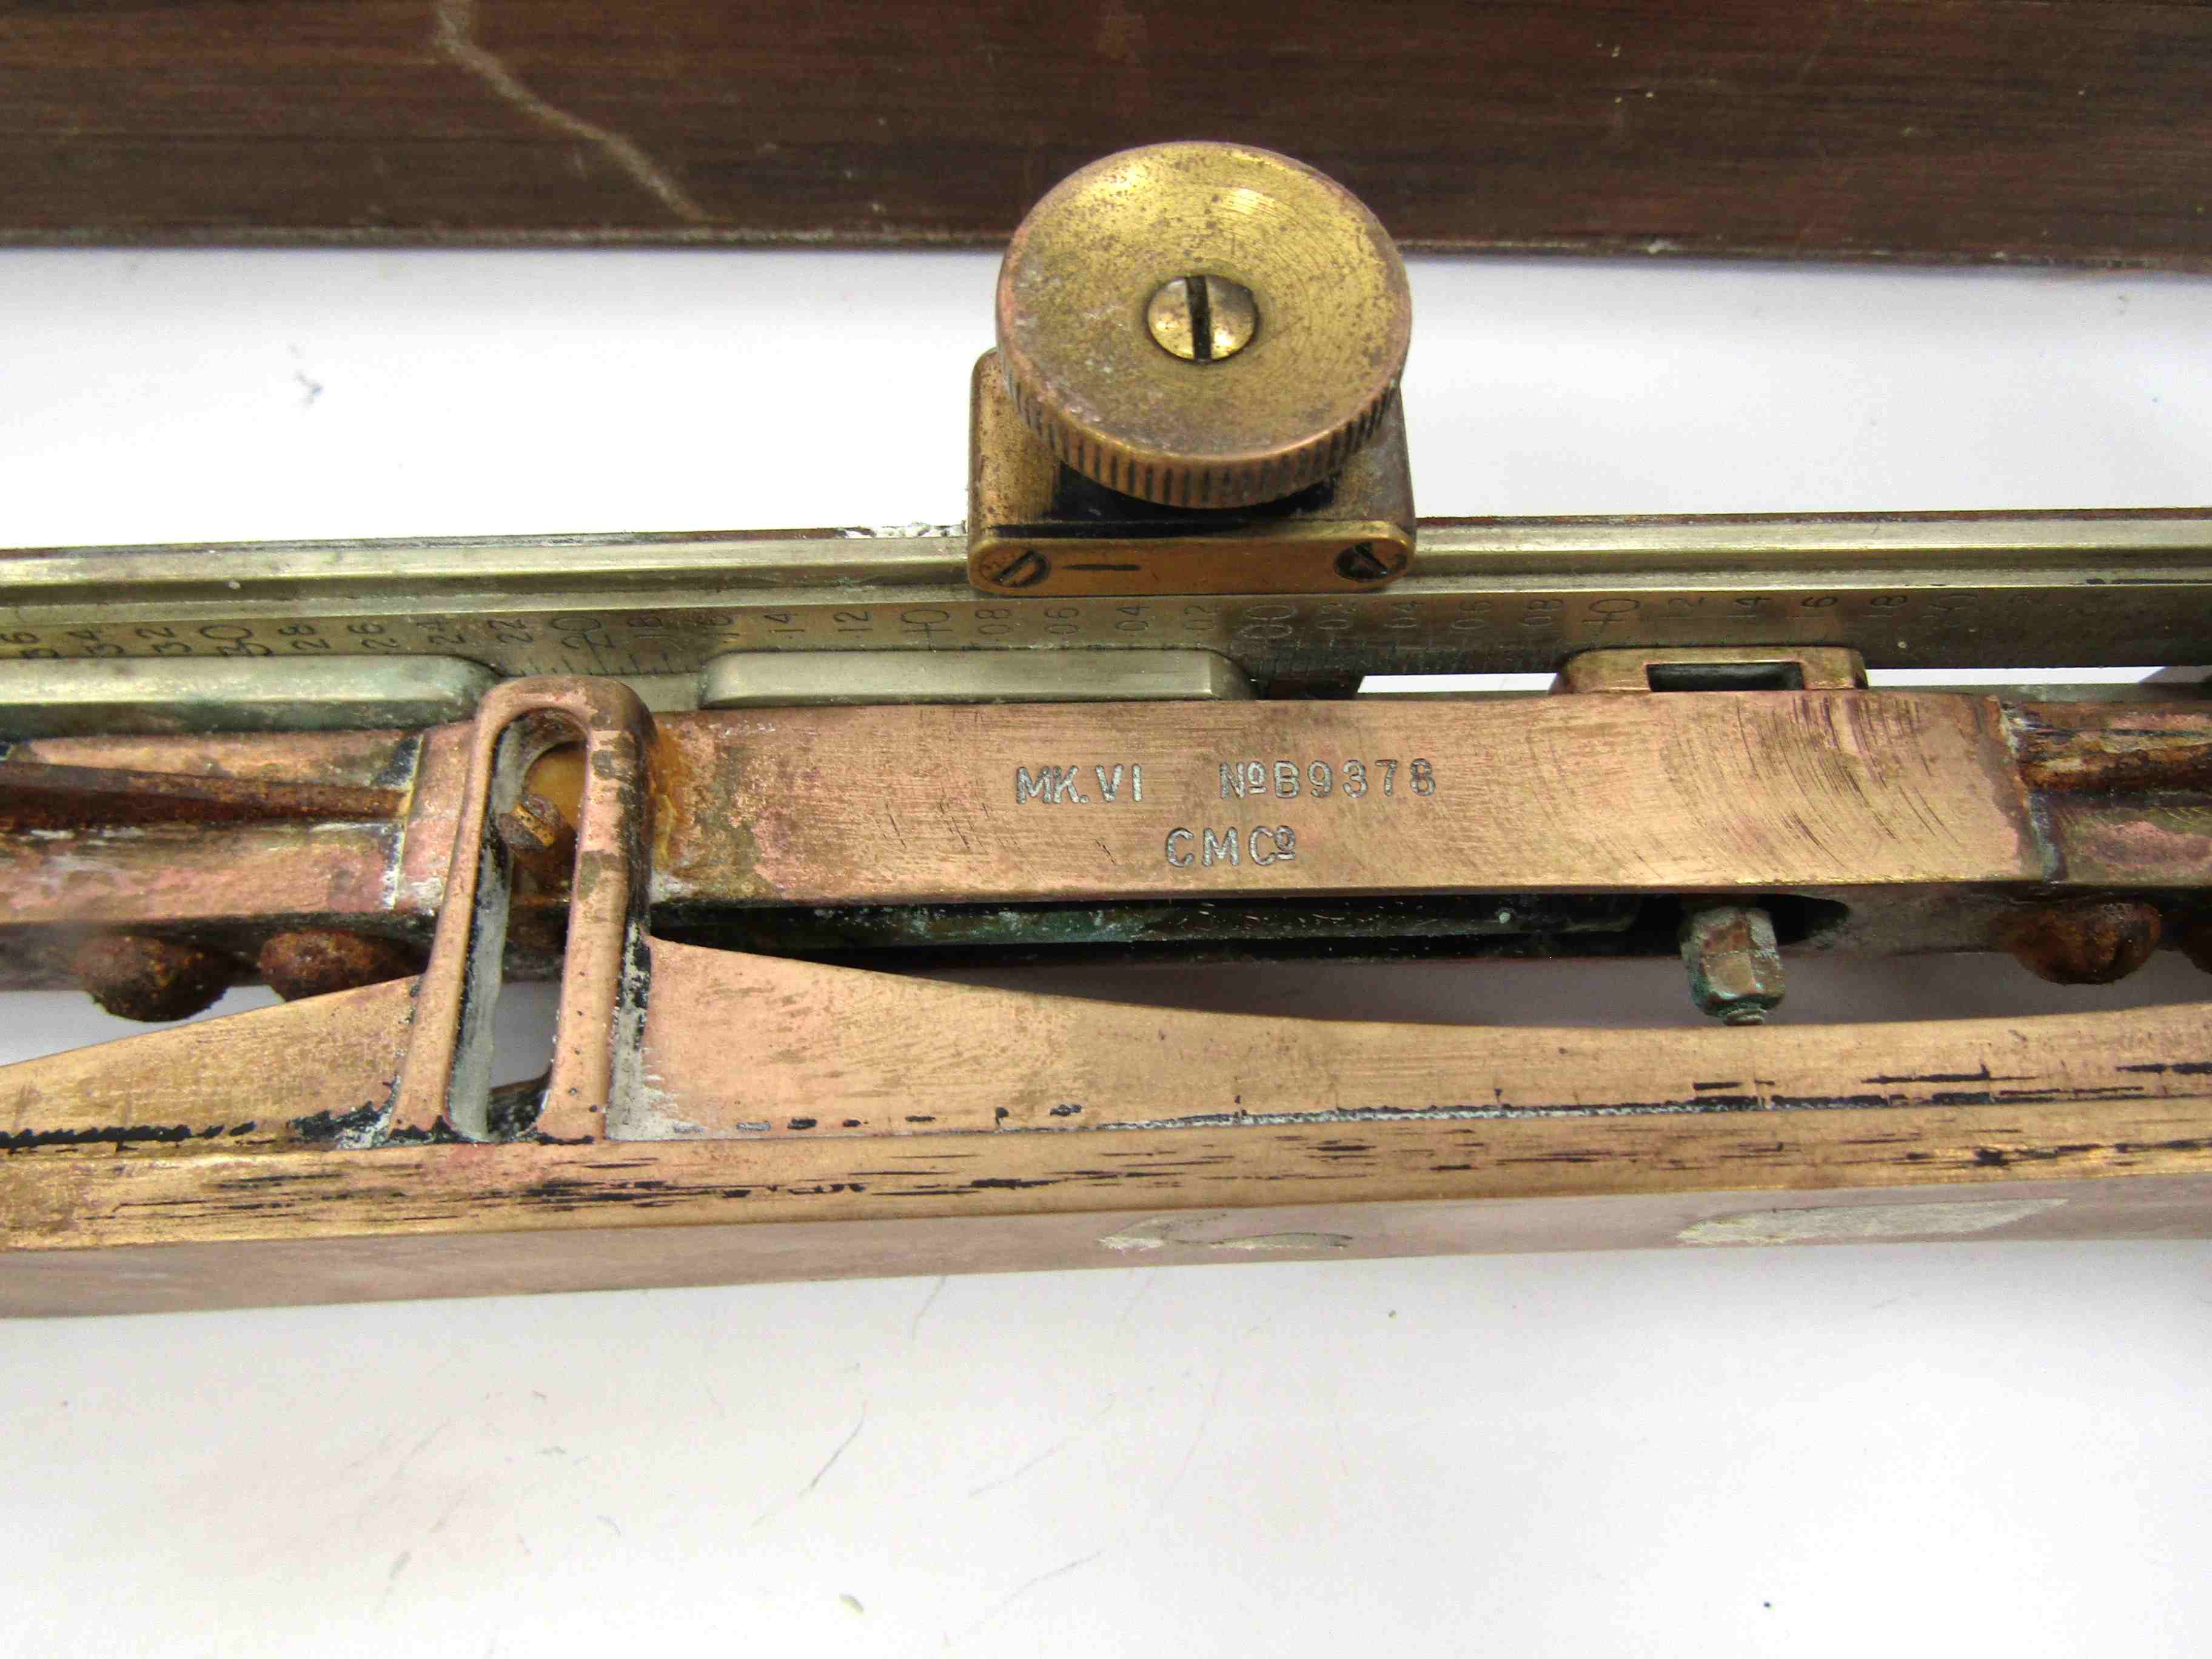 A WWII Clinometer Mk. VI No. B9378 CM Co. - Image 2 of 4